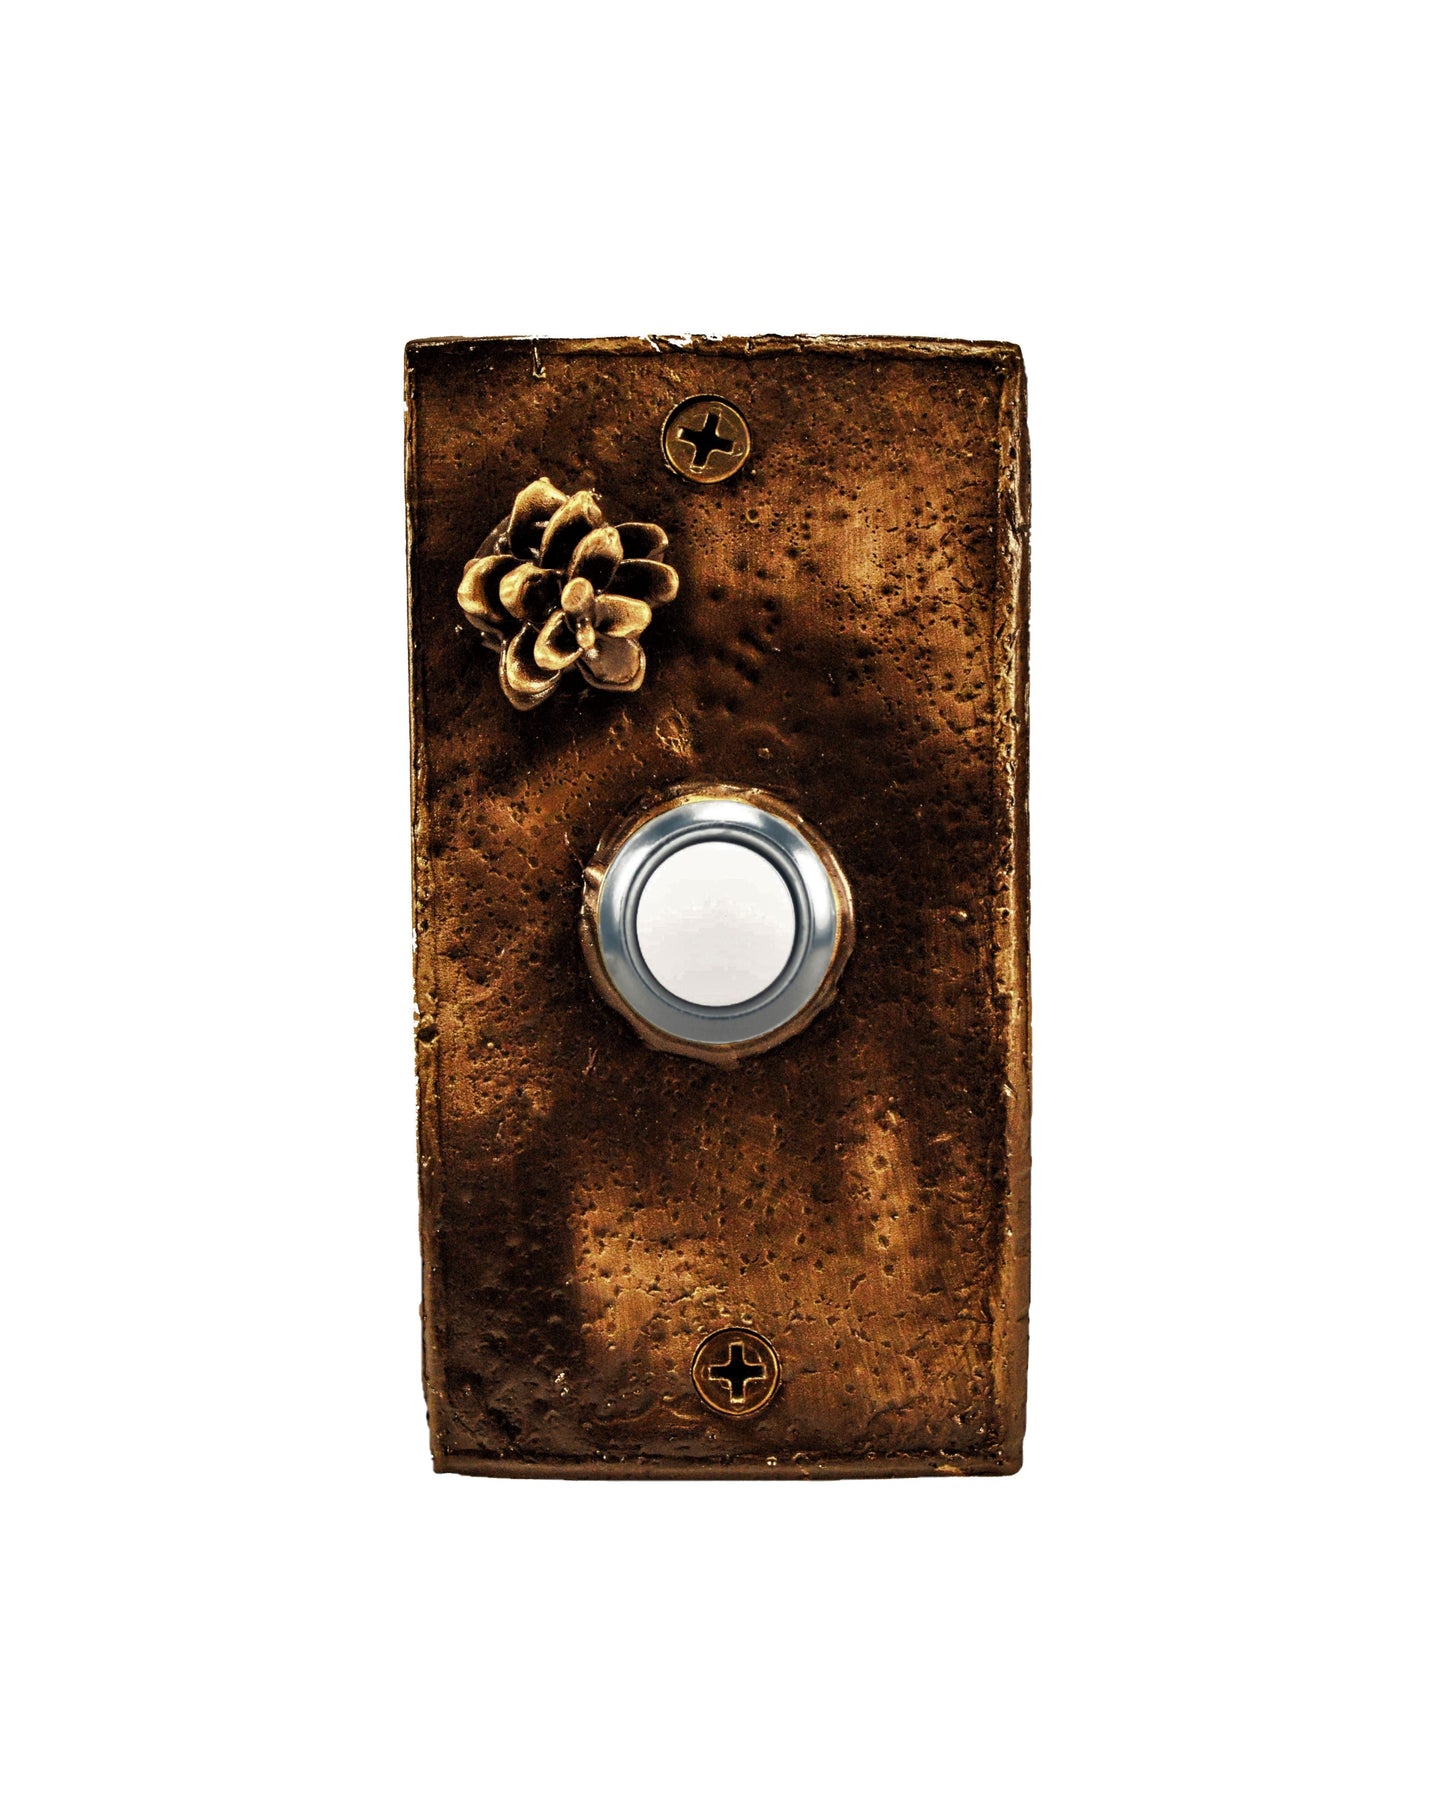 Rectangular Western Hemlock Pine Cone Doorbell - solid Bronze - traditional patina